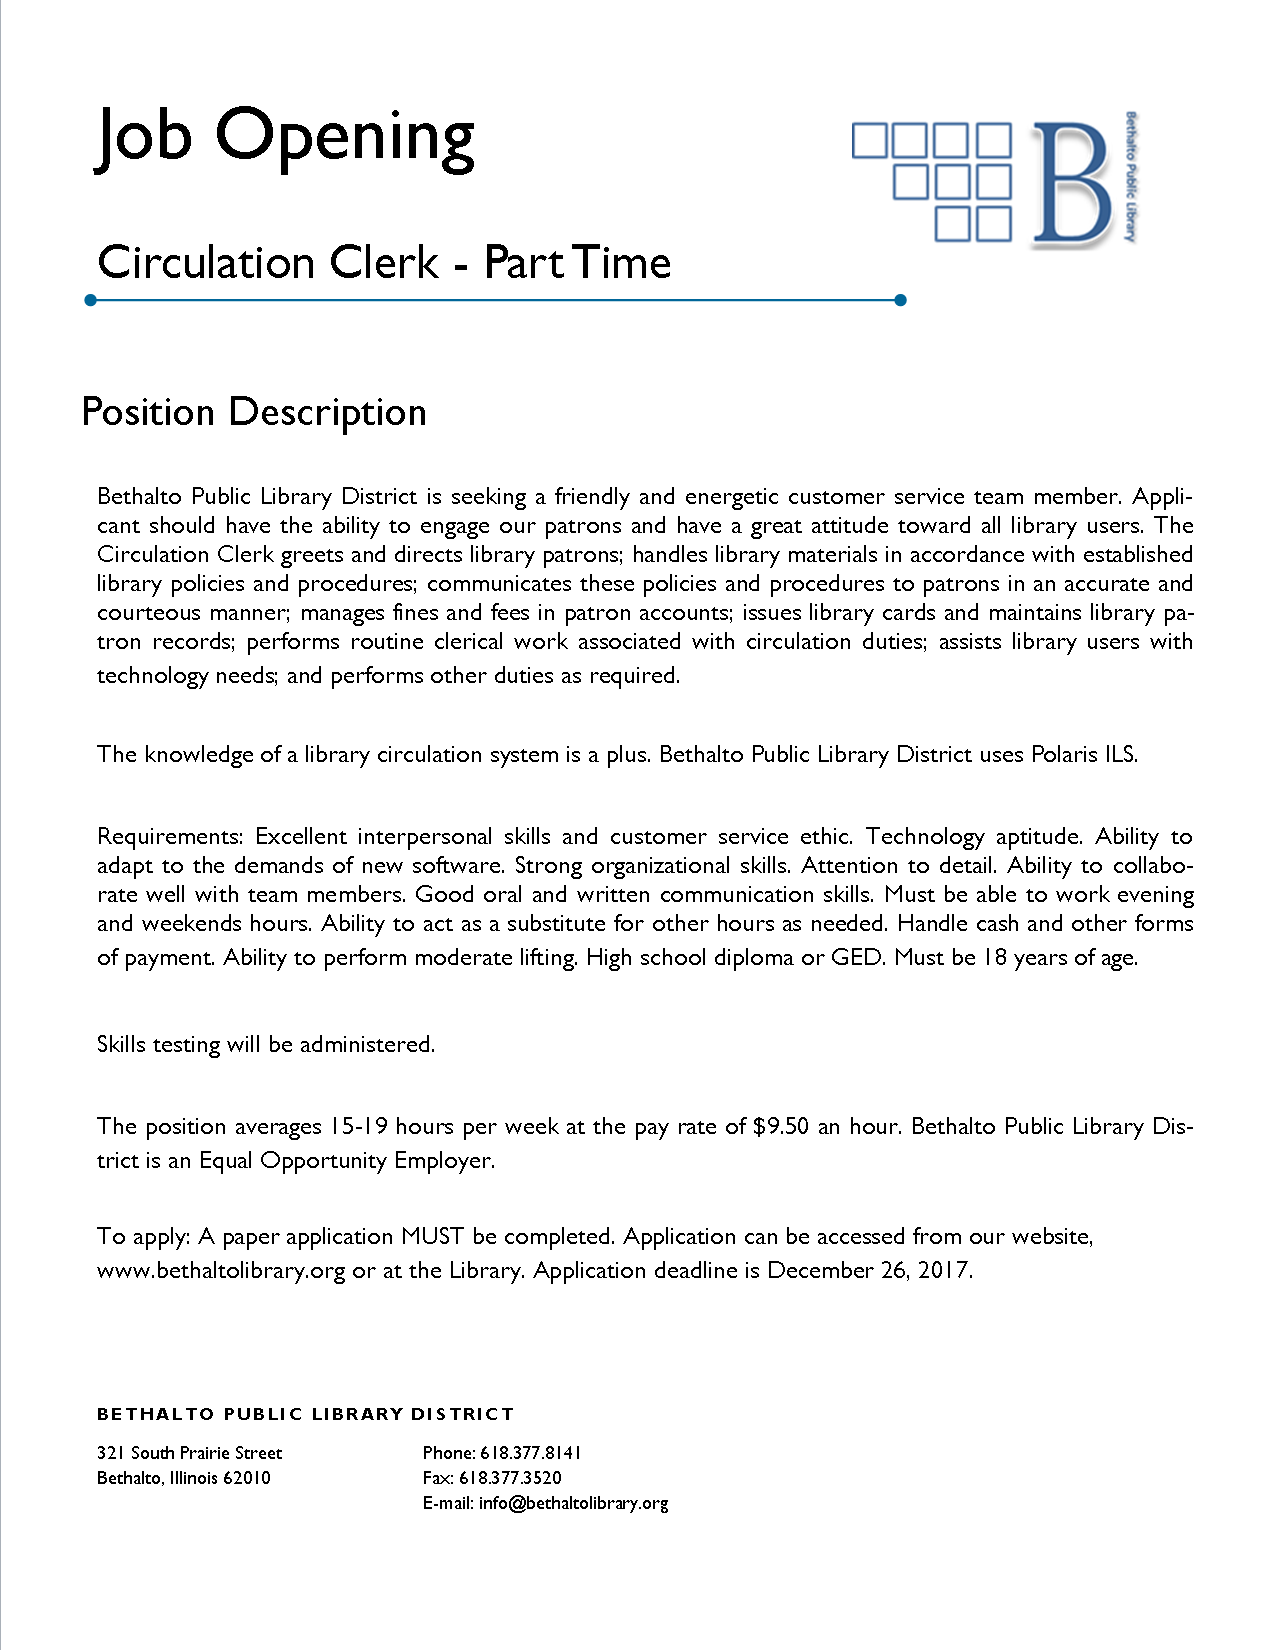 Clerk Position Description 2017-12.png